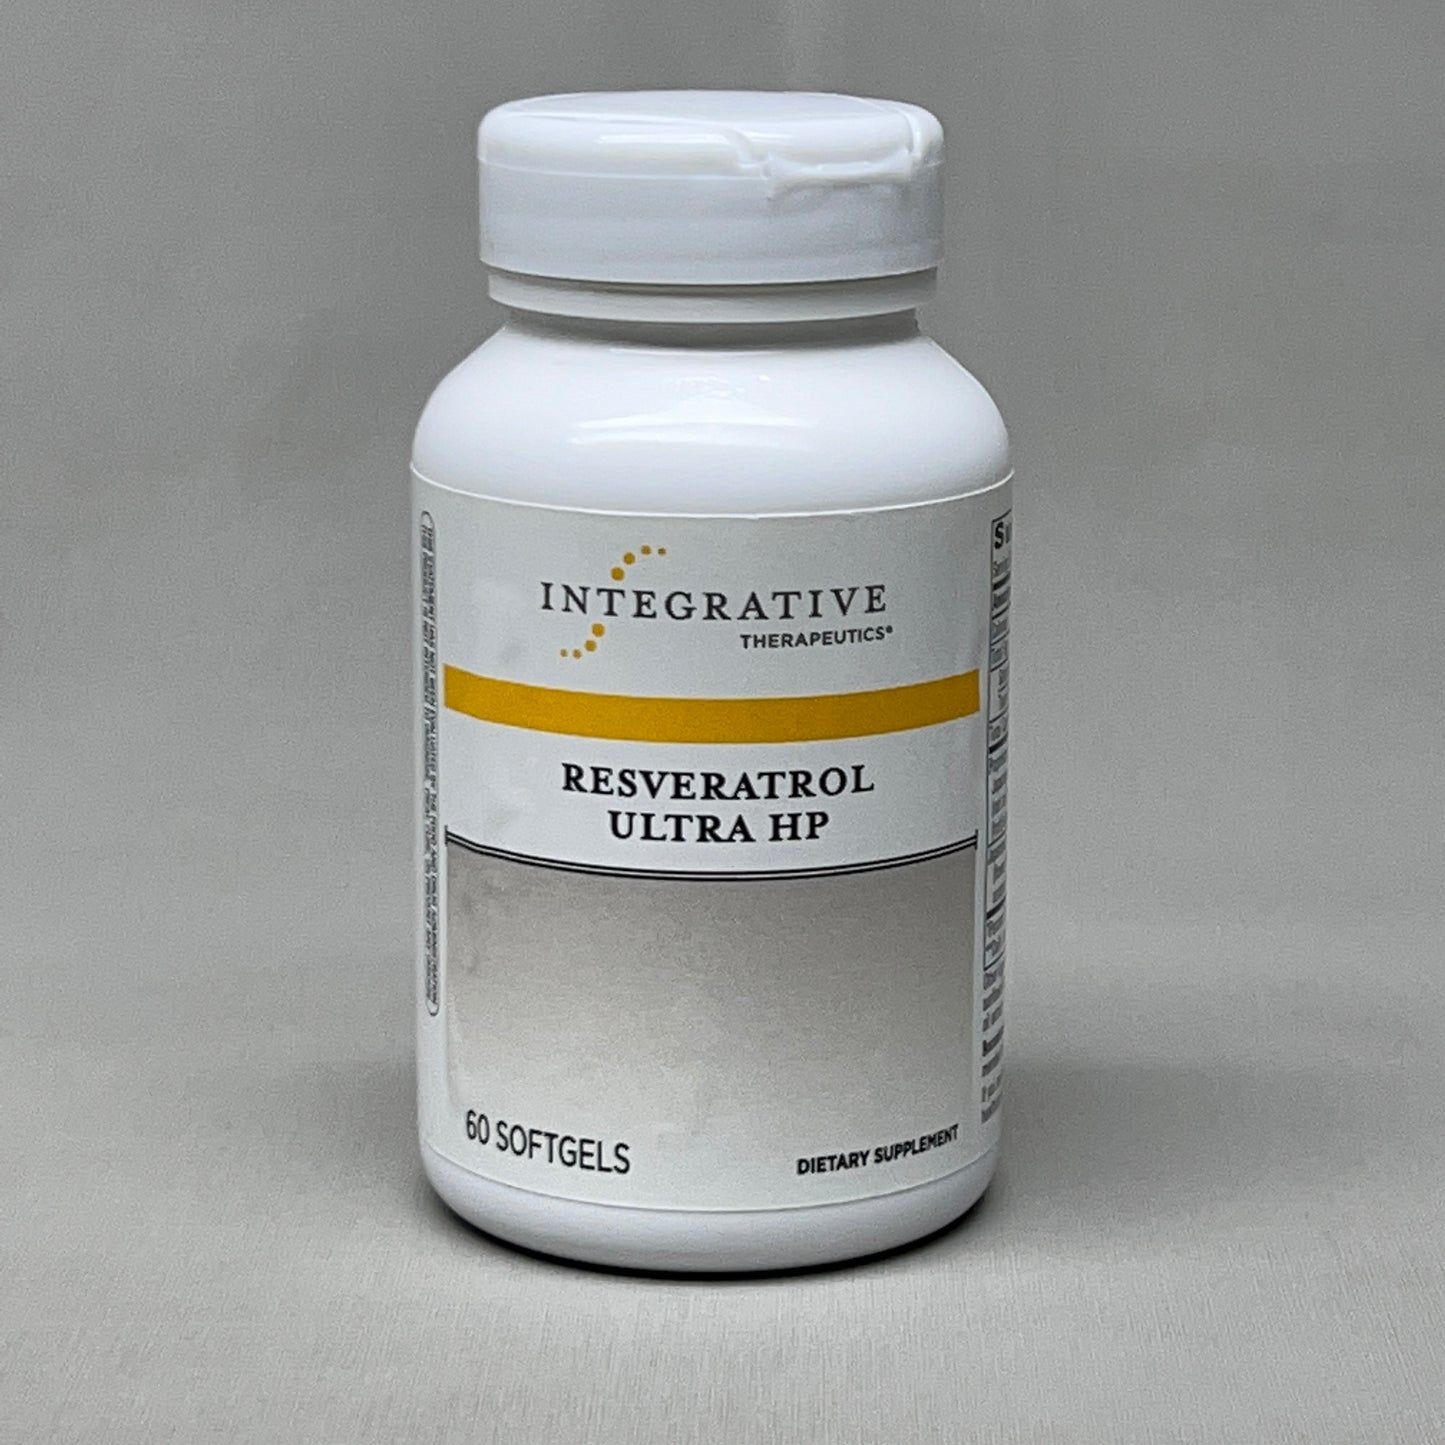 INTEGRATIVE THERAPEUTICS Resveratrol Ultra HP Supplement 60 Softgels 1/25 (New)